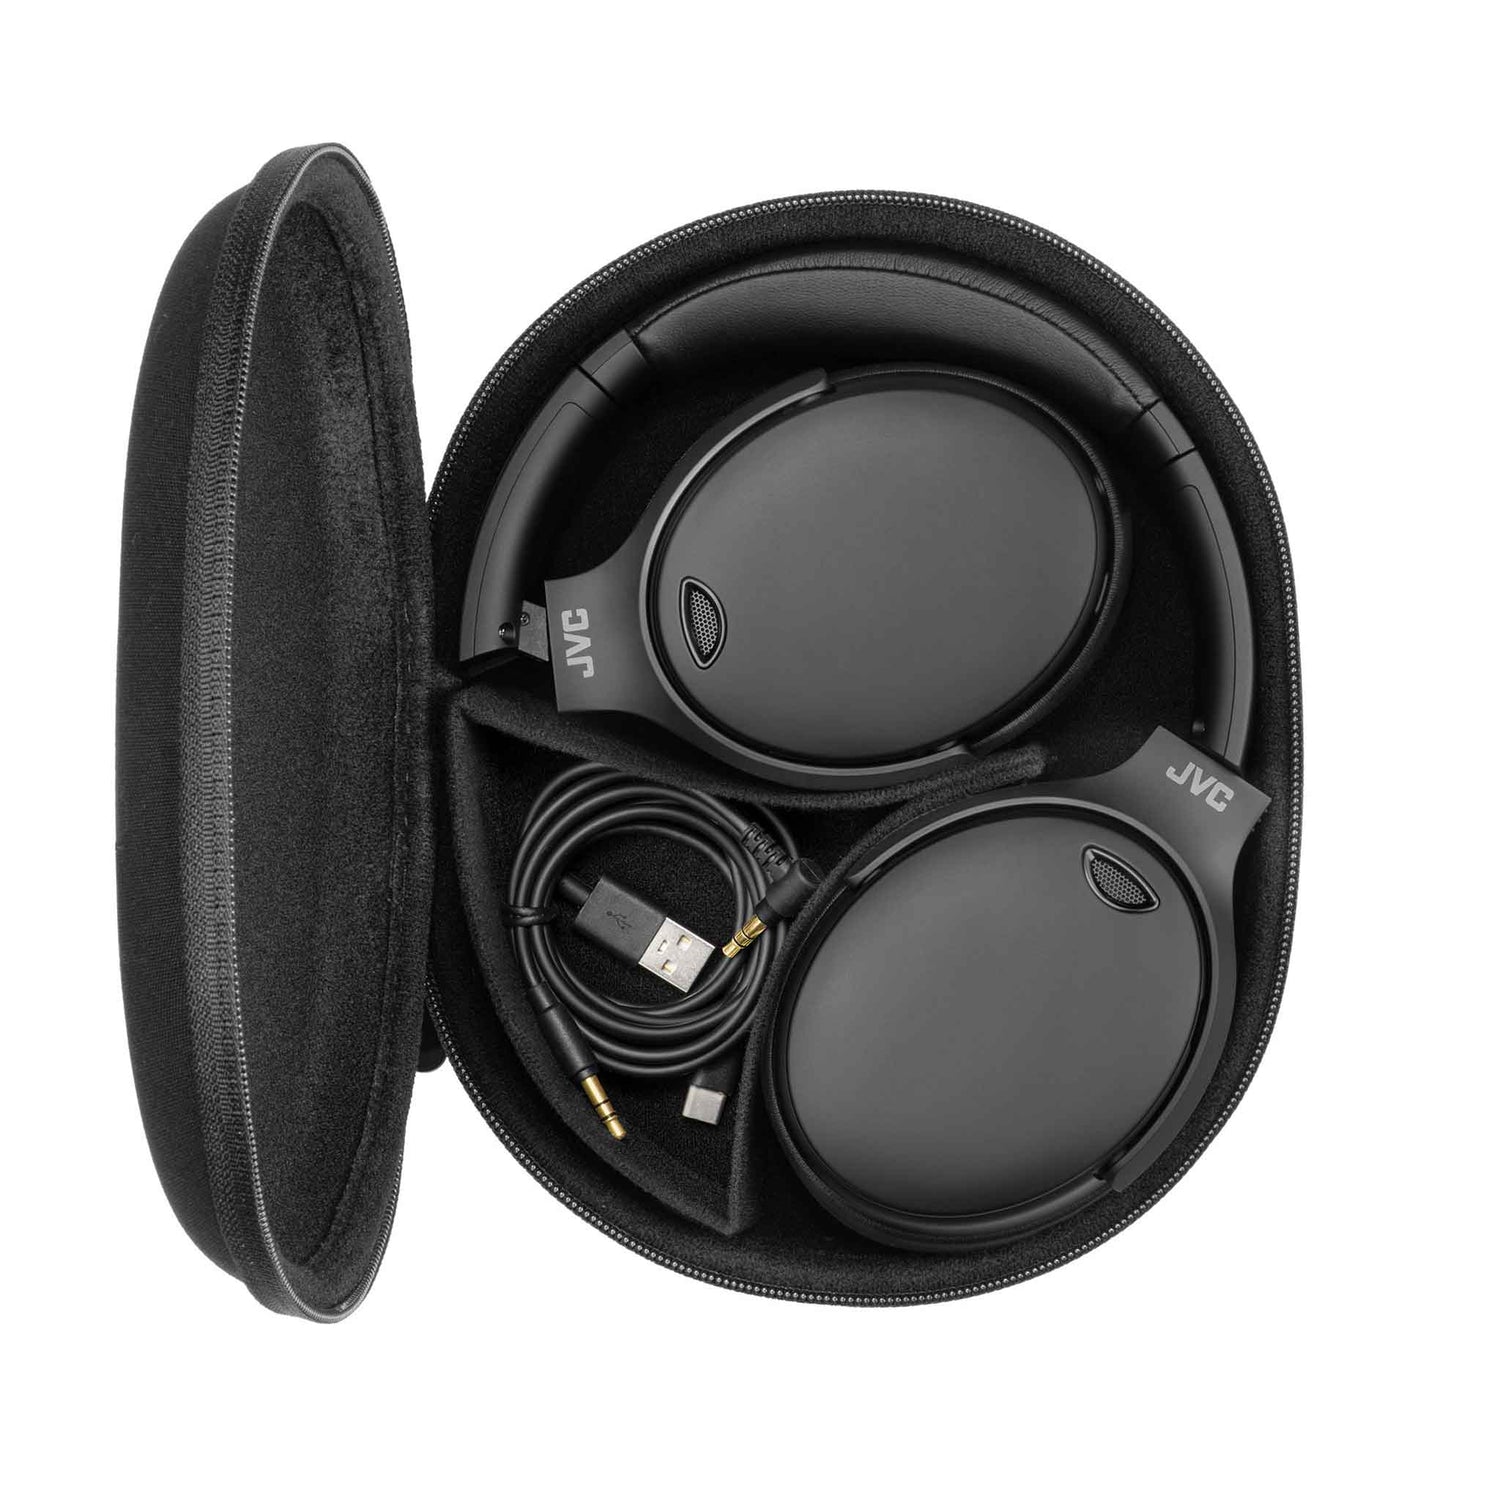 HA-S100N headphones case and charging lead